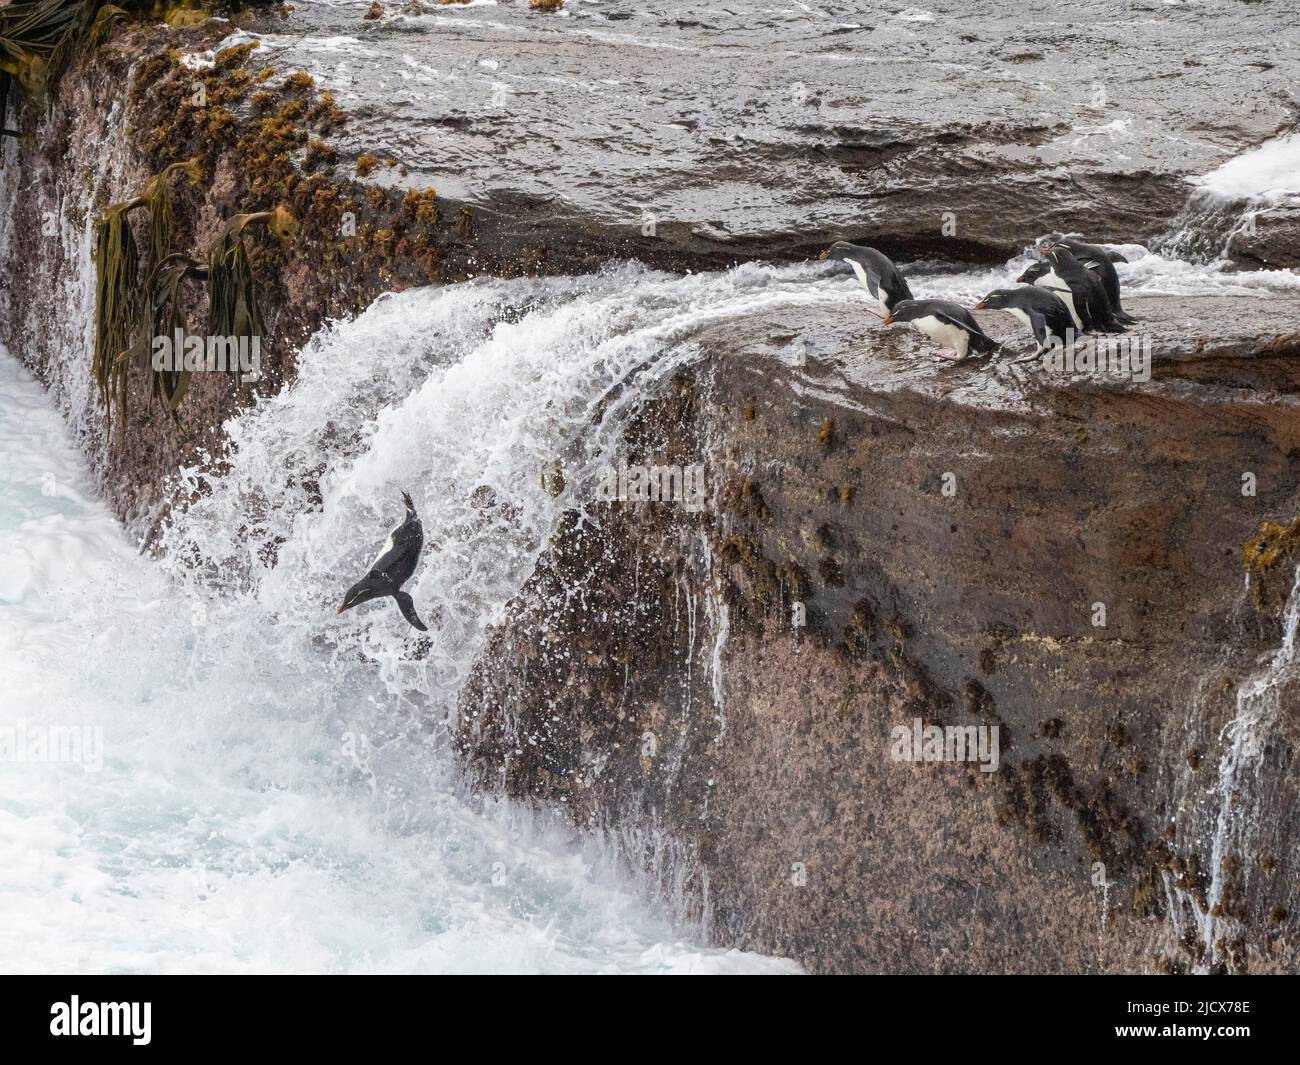 Pingüinos de rockhopper del sur (Eudyptes chrysocome), saltando en enormes olas al mar en Nueva Isla, Falklands, Sudamérica Foto de stock